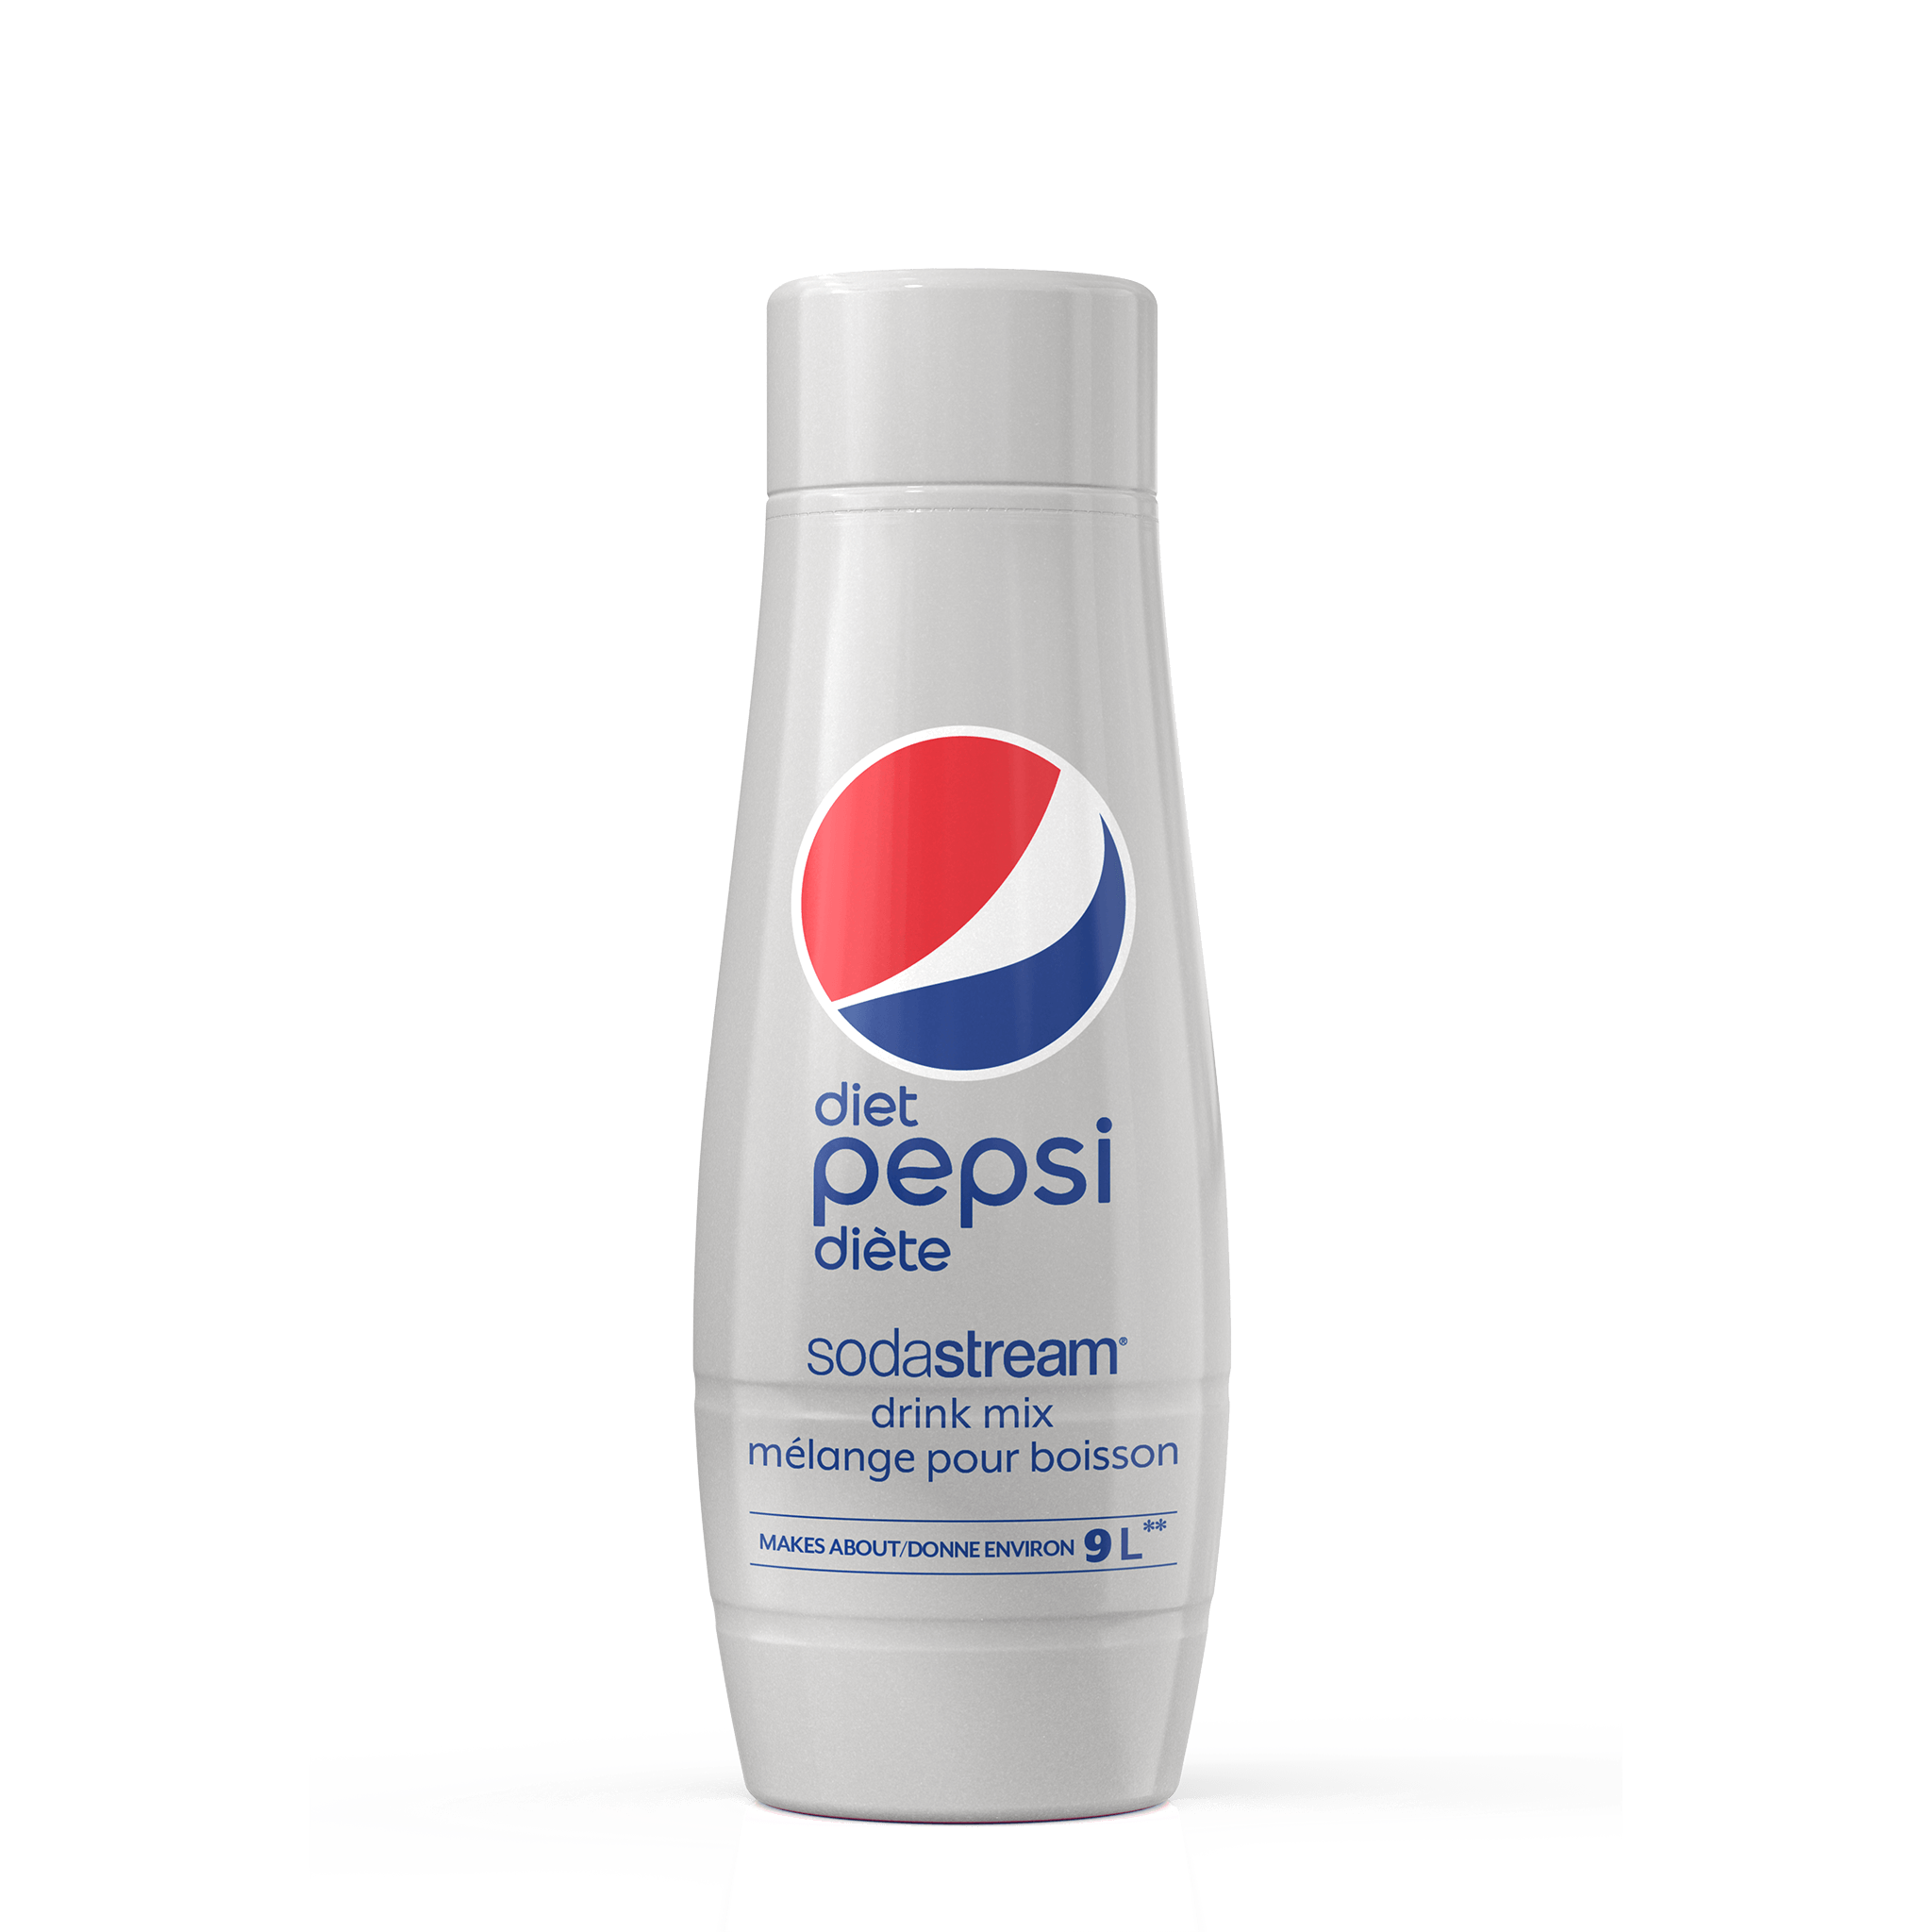 Diet Pepsi sodastream